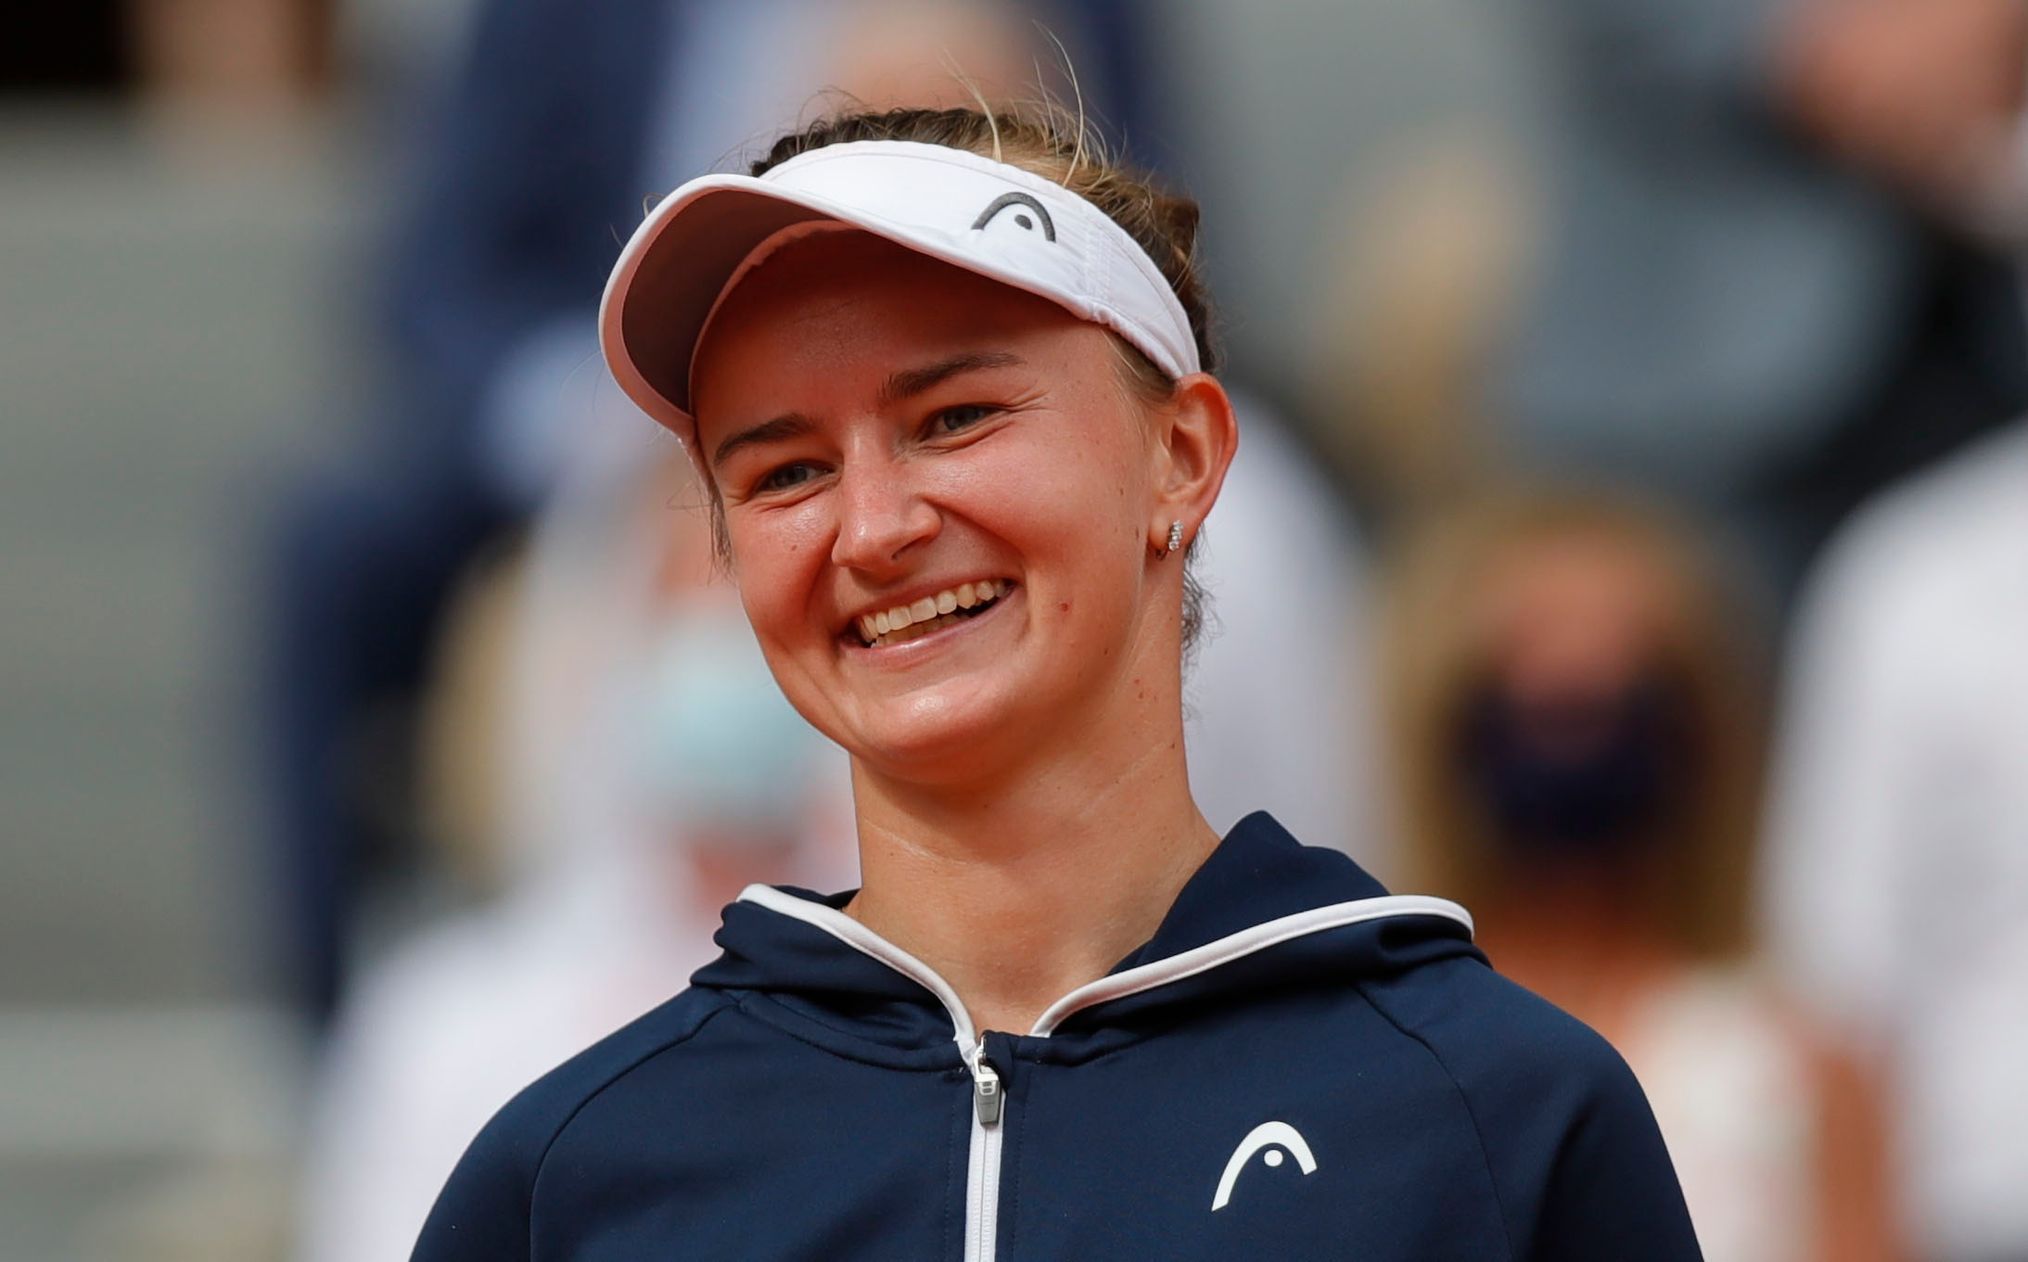 Barbora Krejčíková slaví vítězství ve finále French Open 2021 s Anastasií Pavljučenkovovou